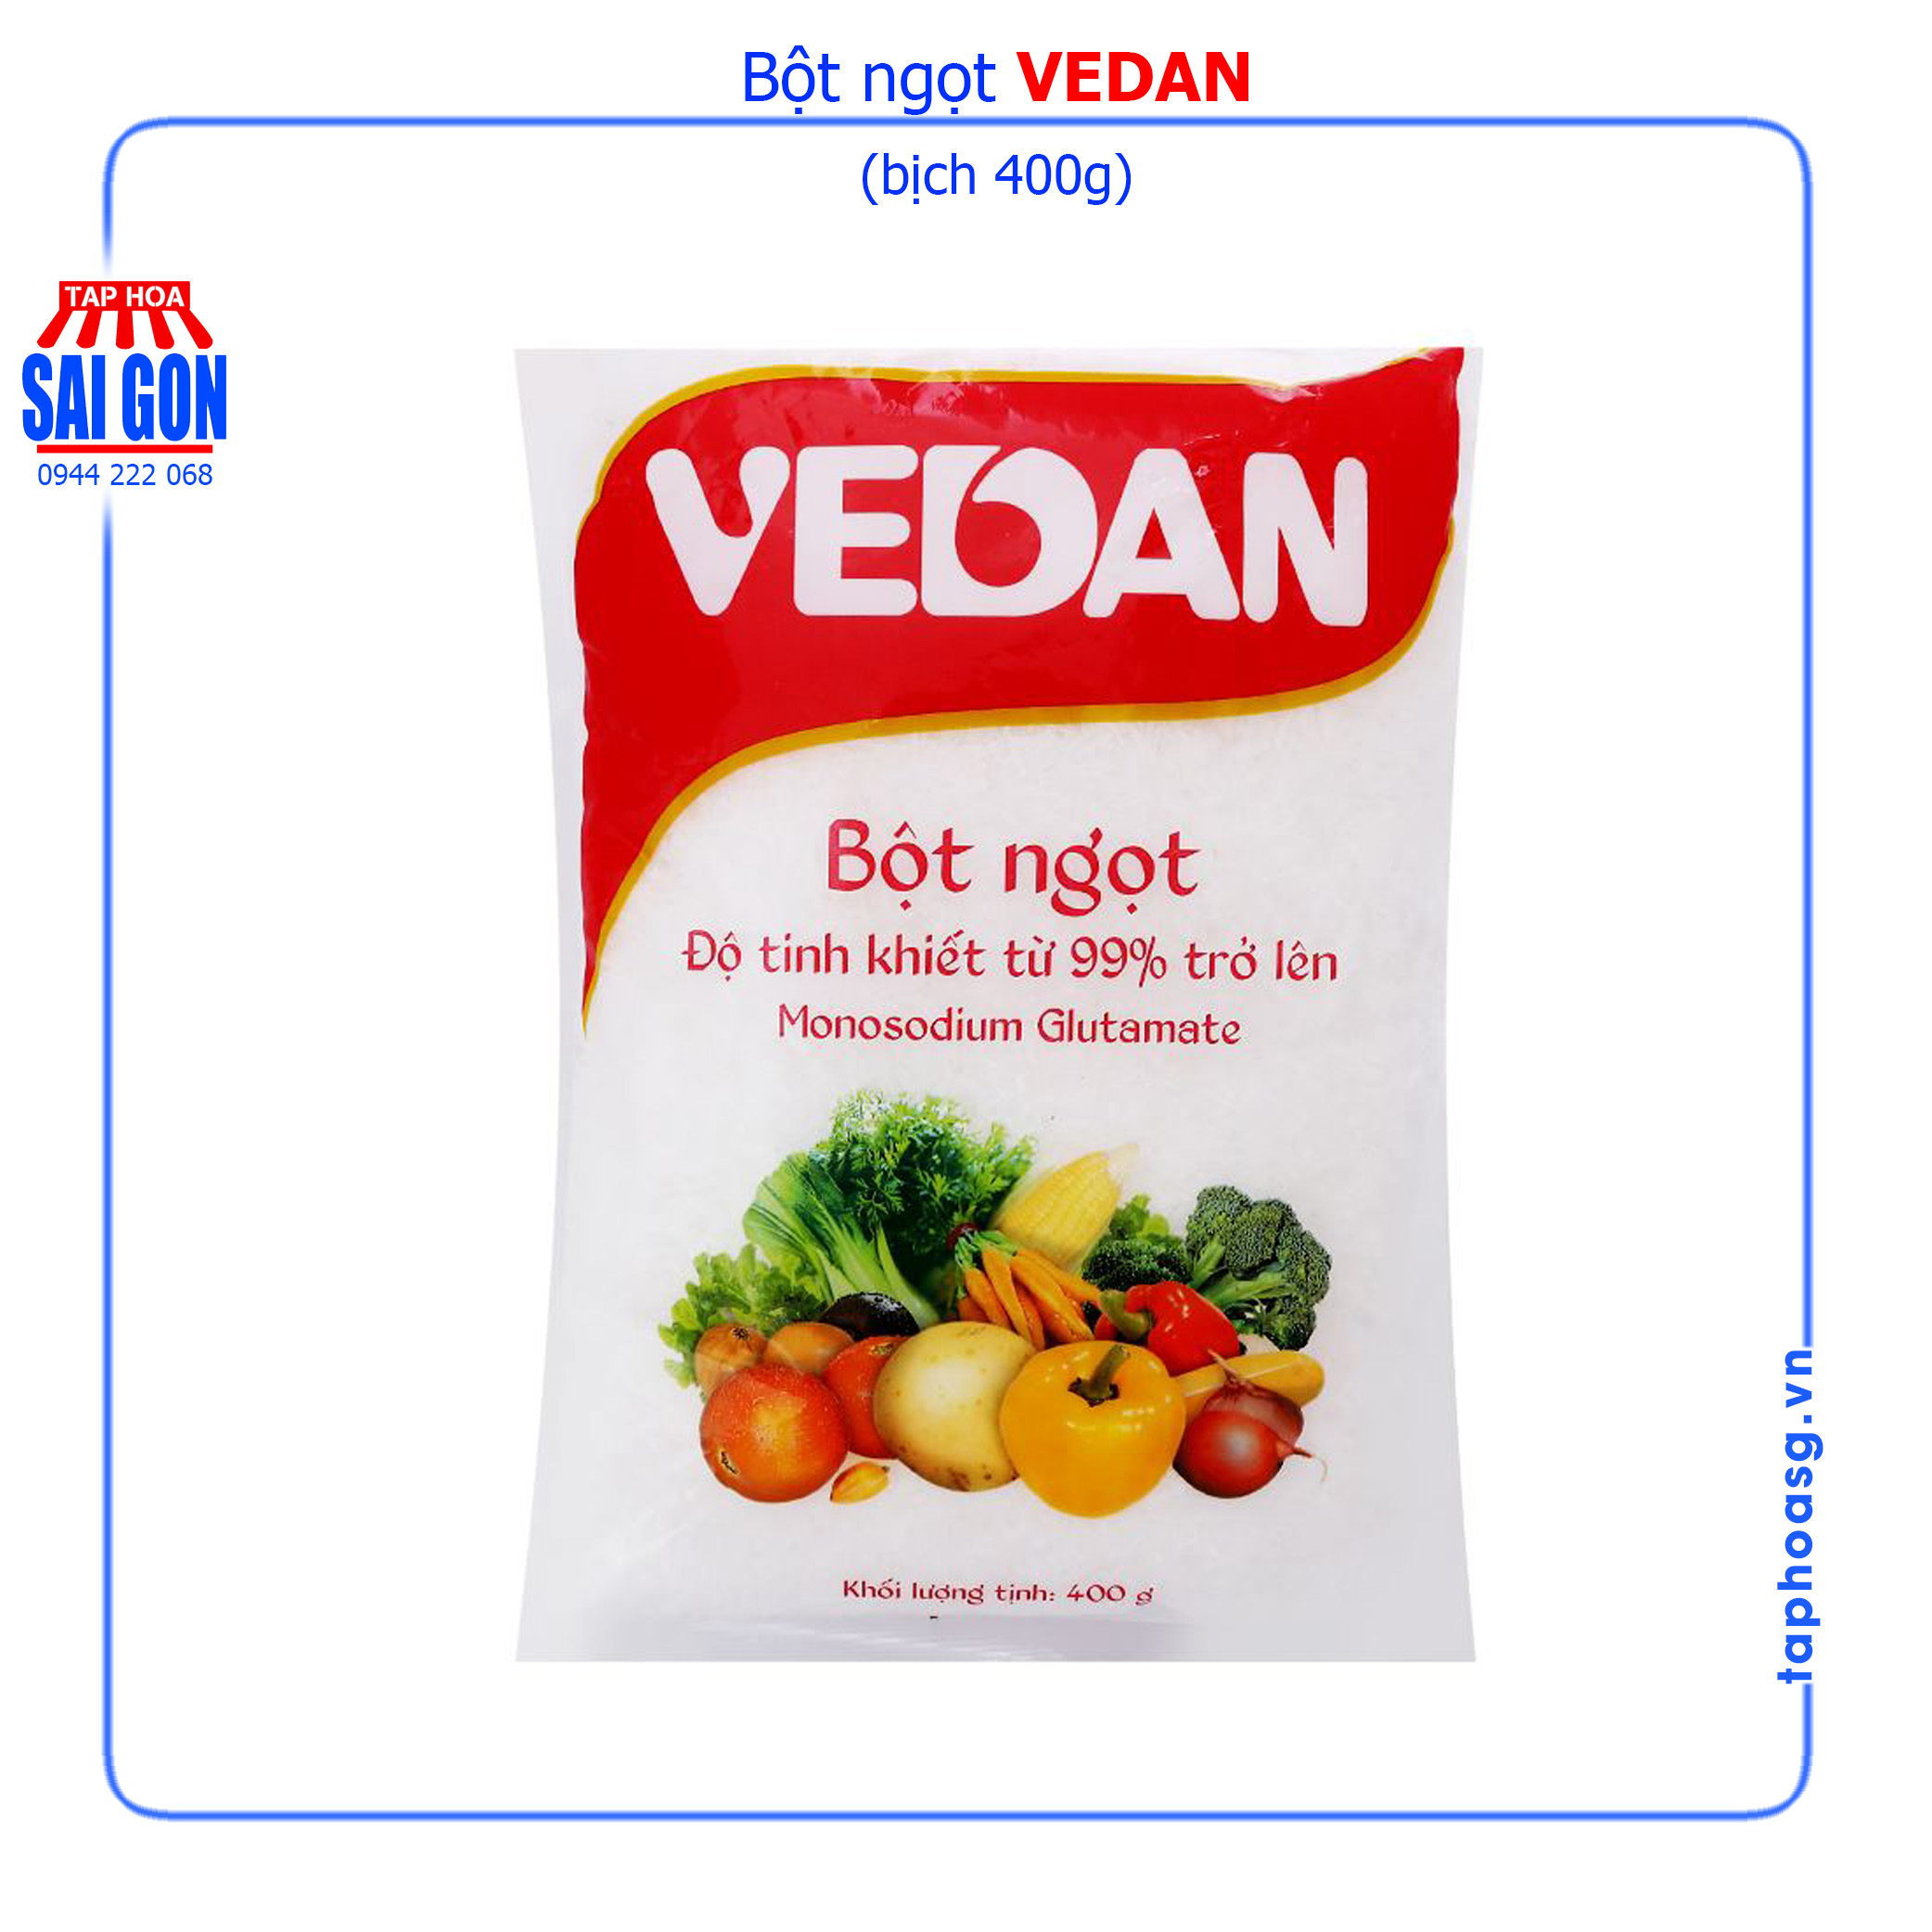 Bột ngọt Vedan gói 400g với độ tinh khiết từ 99% trở lên giúp món ăn ngọt